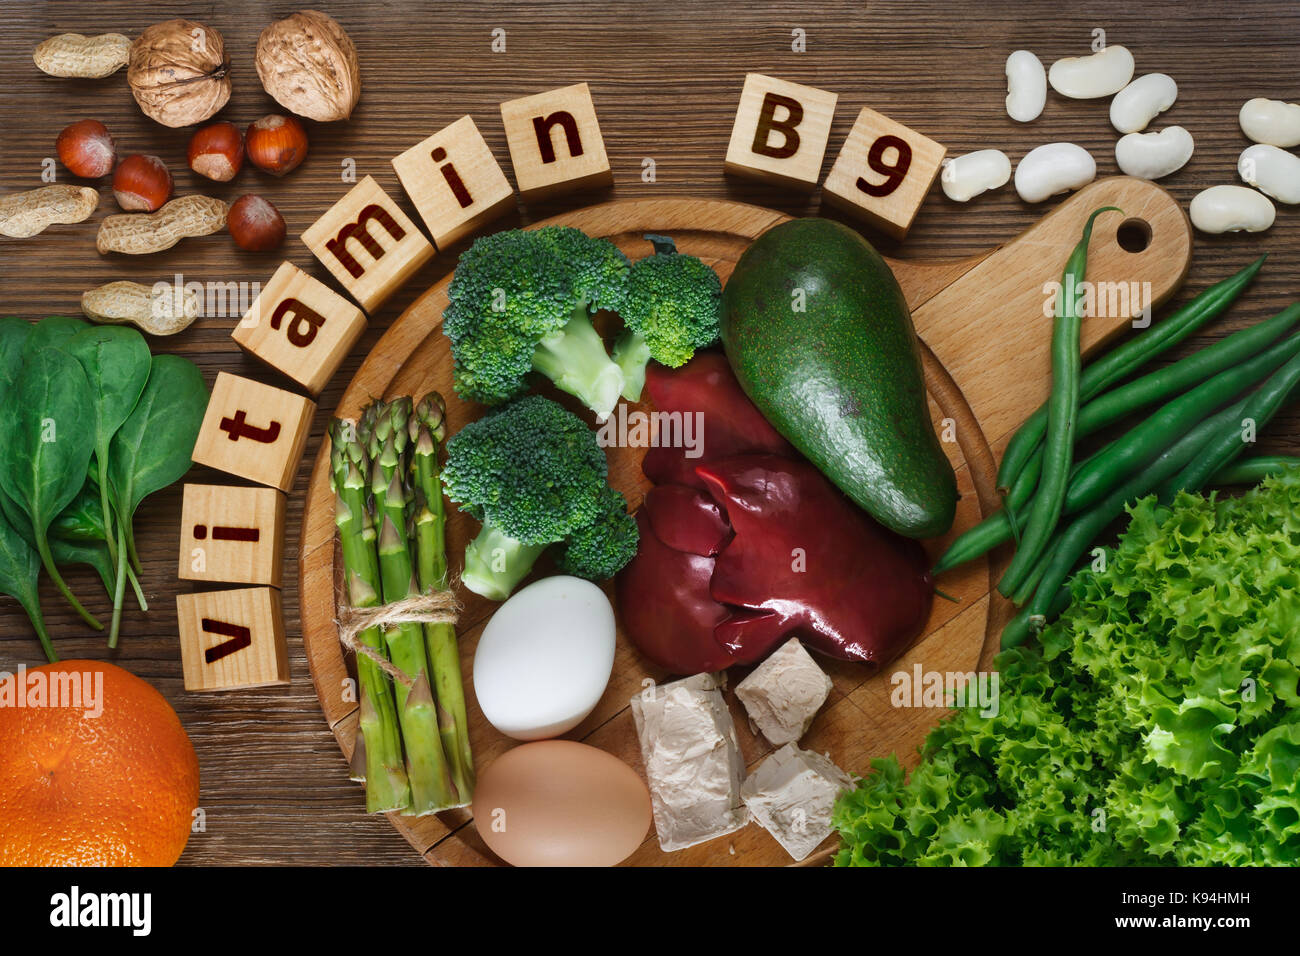 Lebensmittel, die reich an Vitamin B9 (Folsäure) wie Leber, Spargel,  Brokkoli, Eier, Salat, Avocado, Hefe, Nüssen, Spinat, Orange und Bohnen.  Ansicht von oben Stockfotografie - Alamy